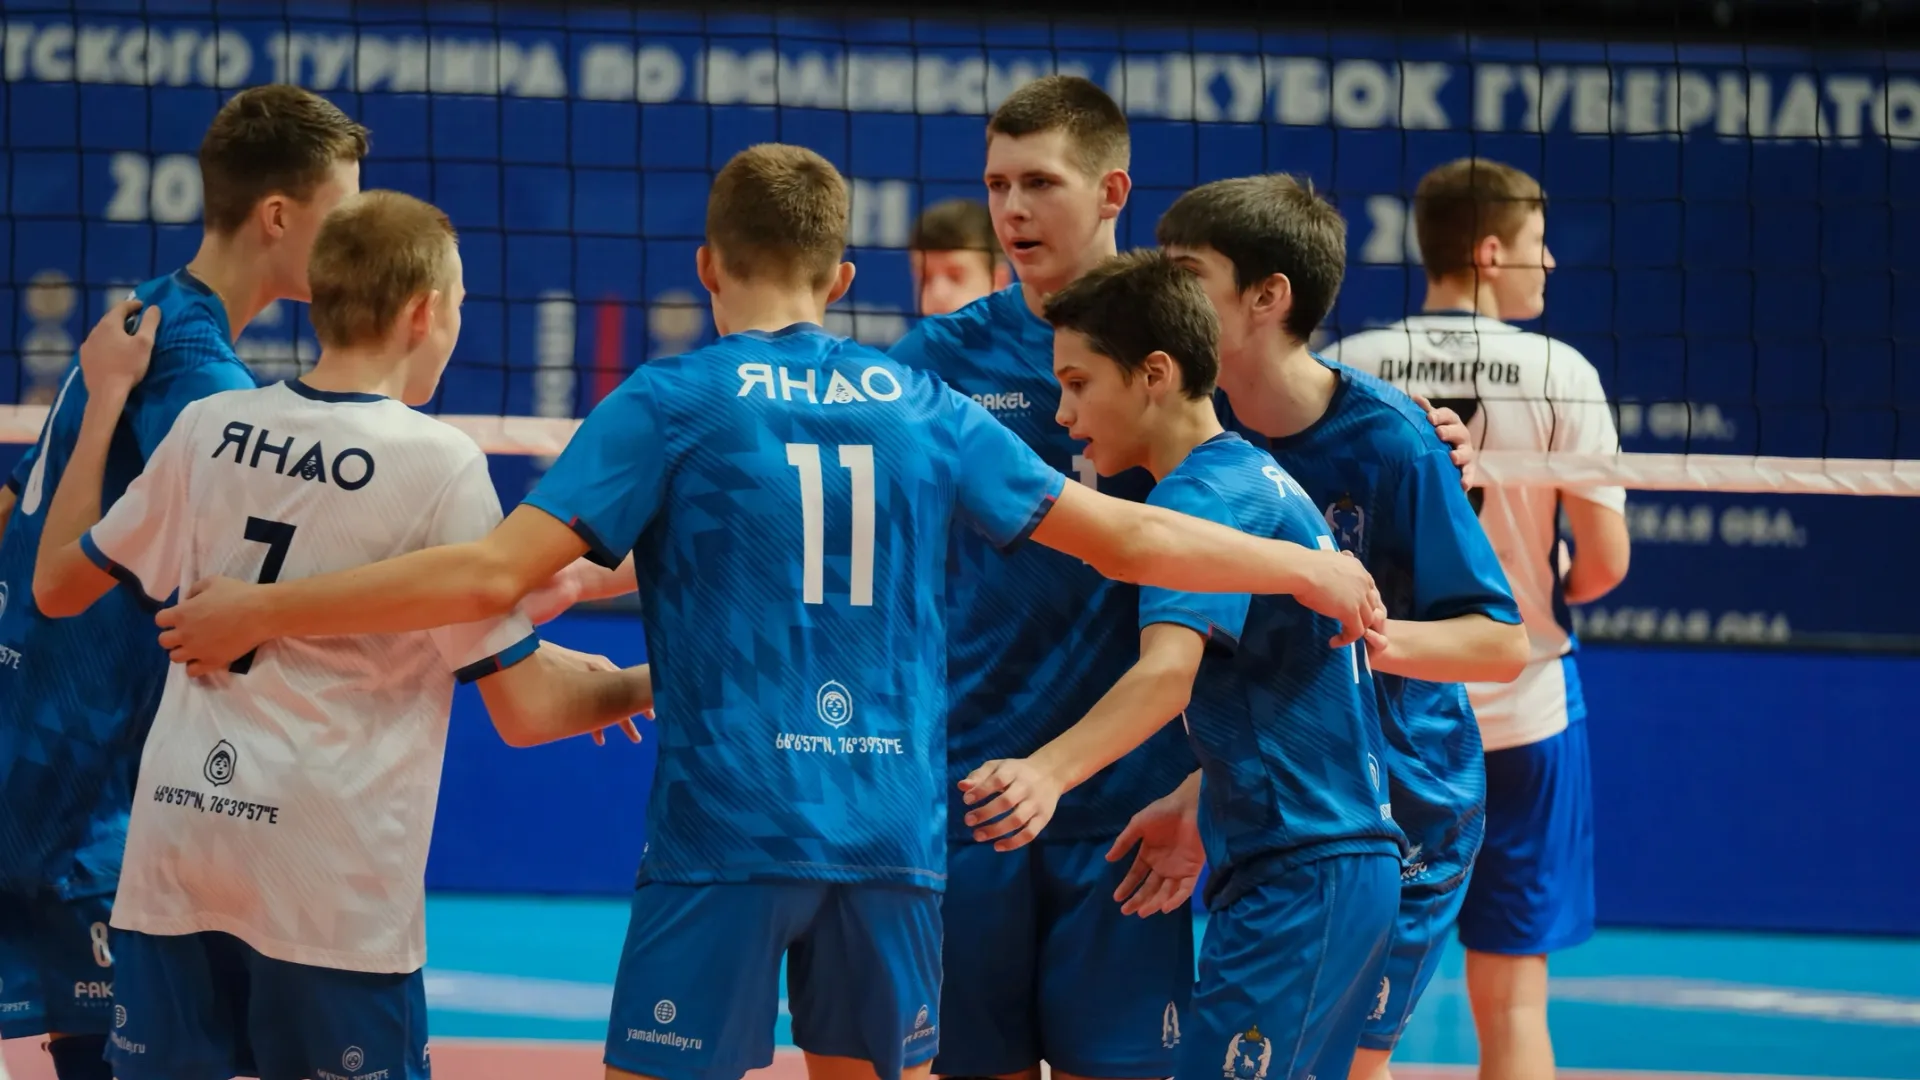 Ямальцы пропустили на первое место команду из Нижнего Новгорода. Фото: предоставлено Региональной Федерацией волейбола ЯНАО